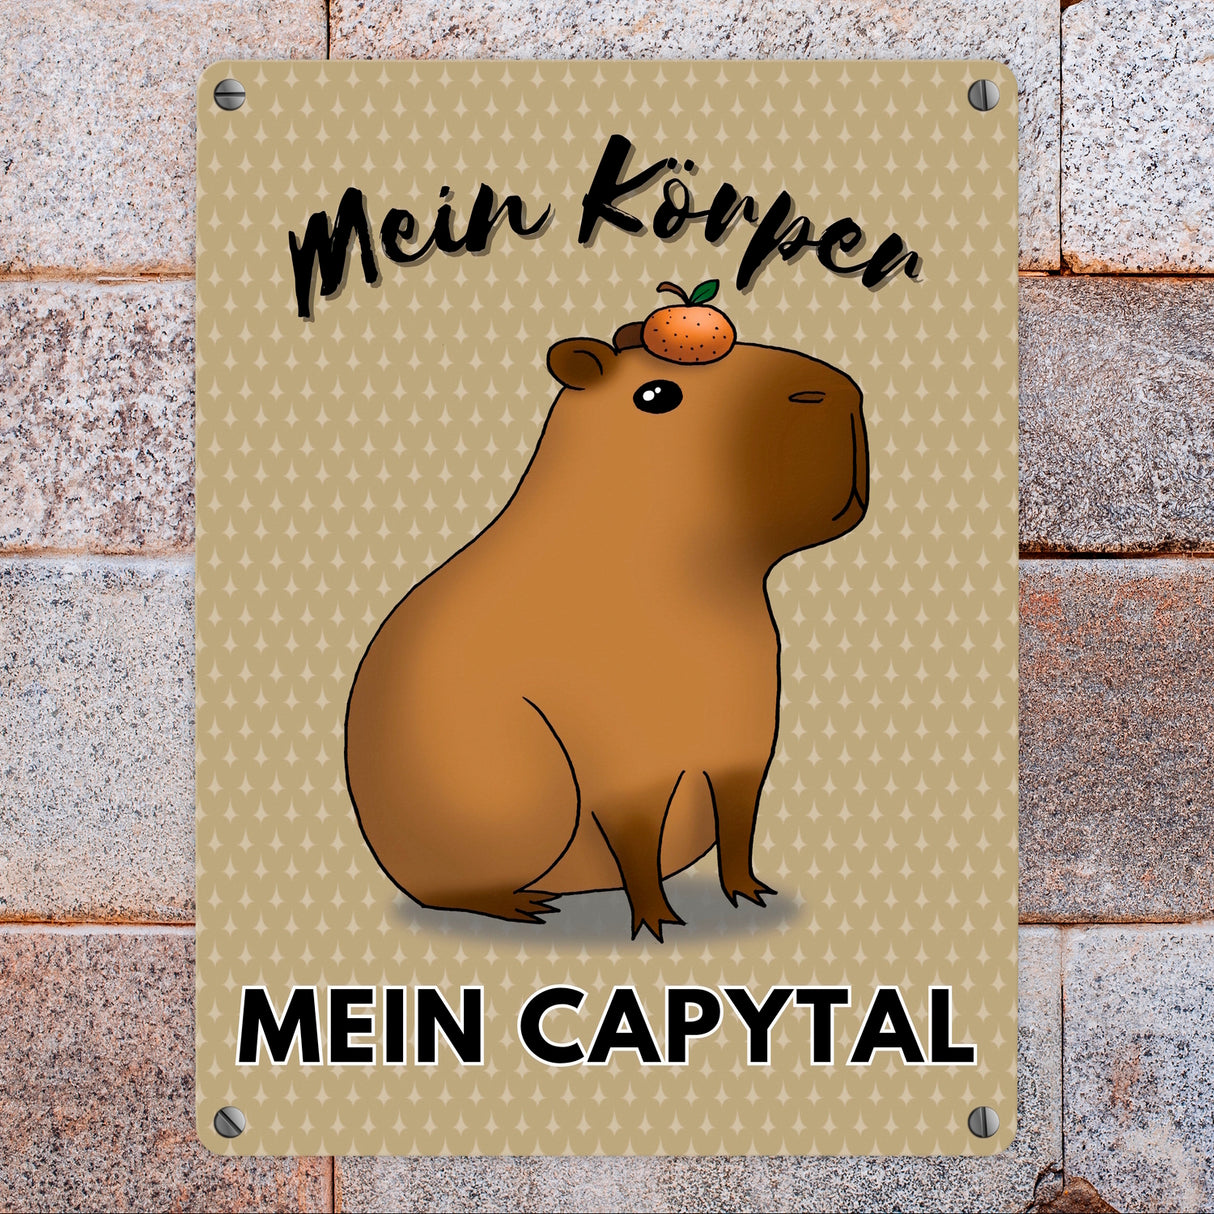 Mein Körper mein Capytal Metallschild in 15x20 cm mit niedlichem Capybara